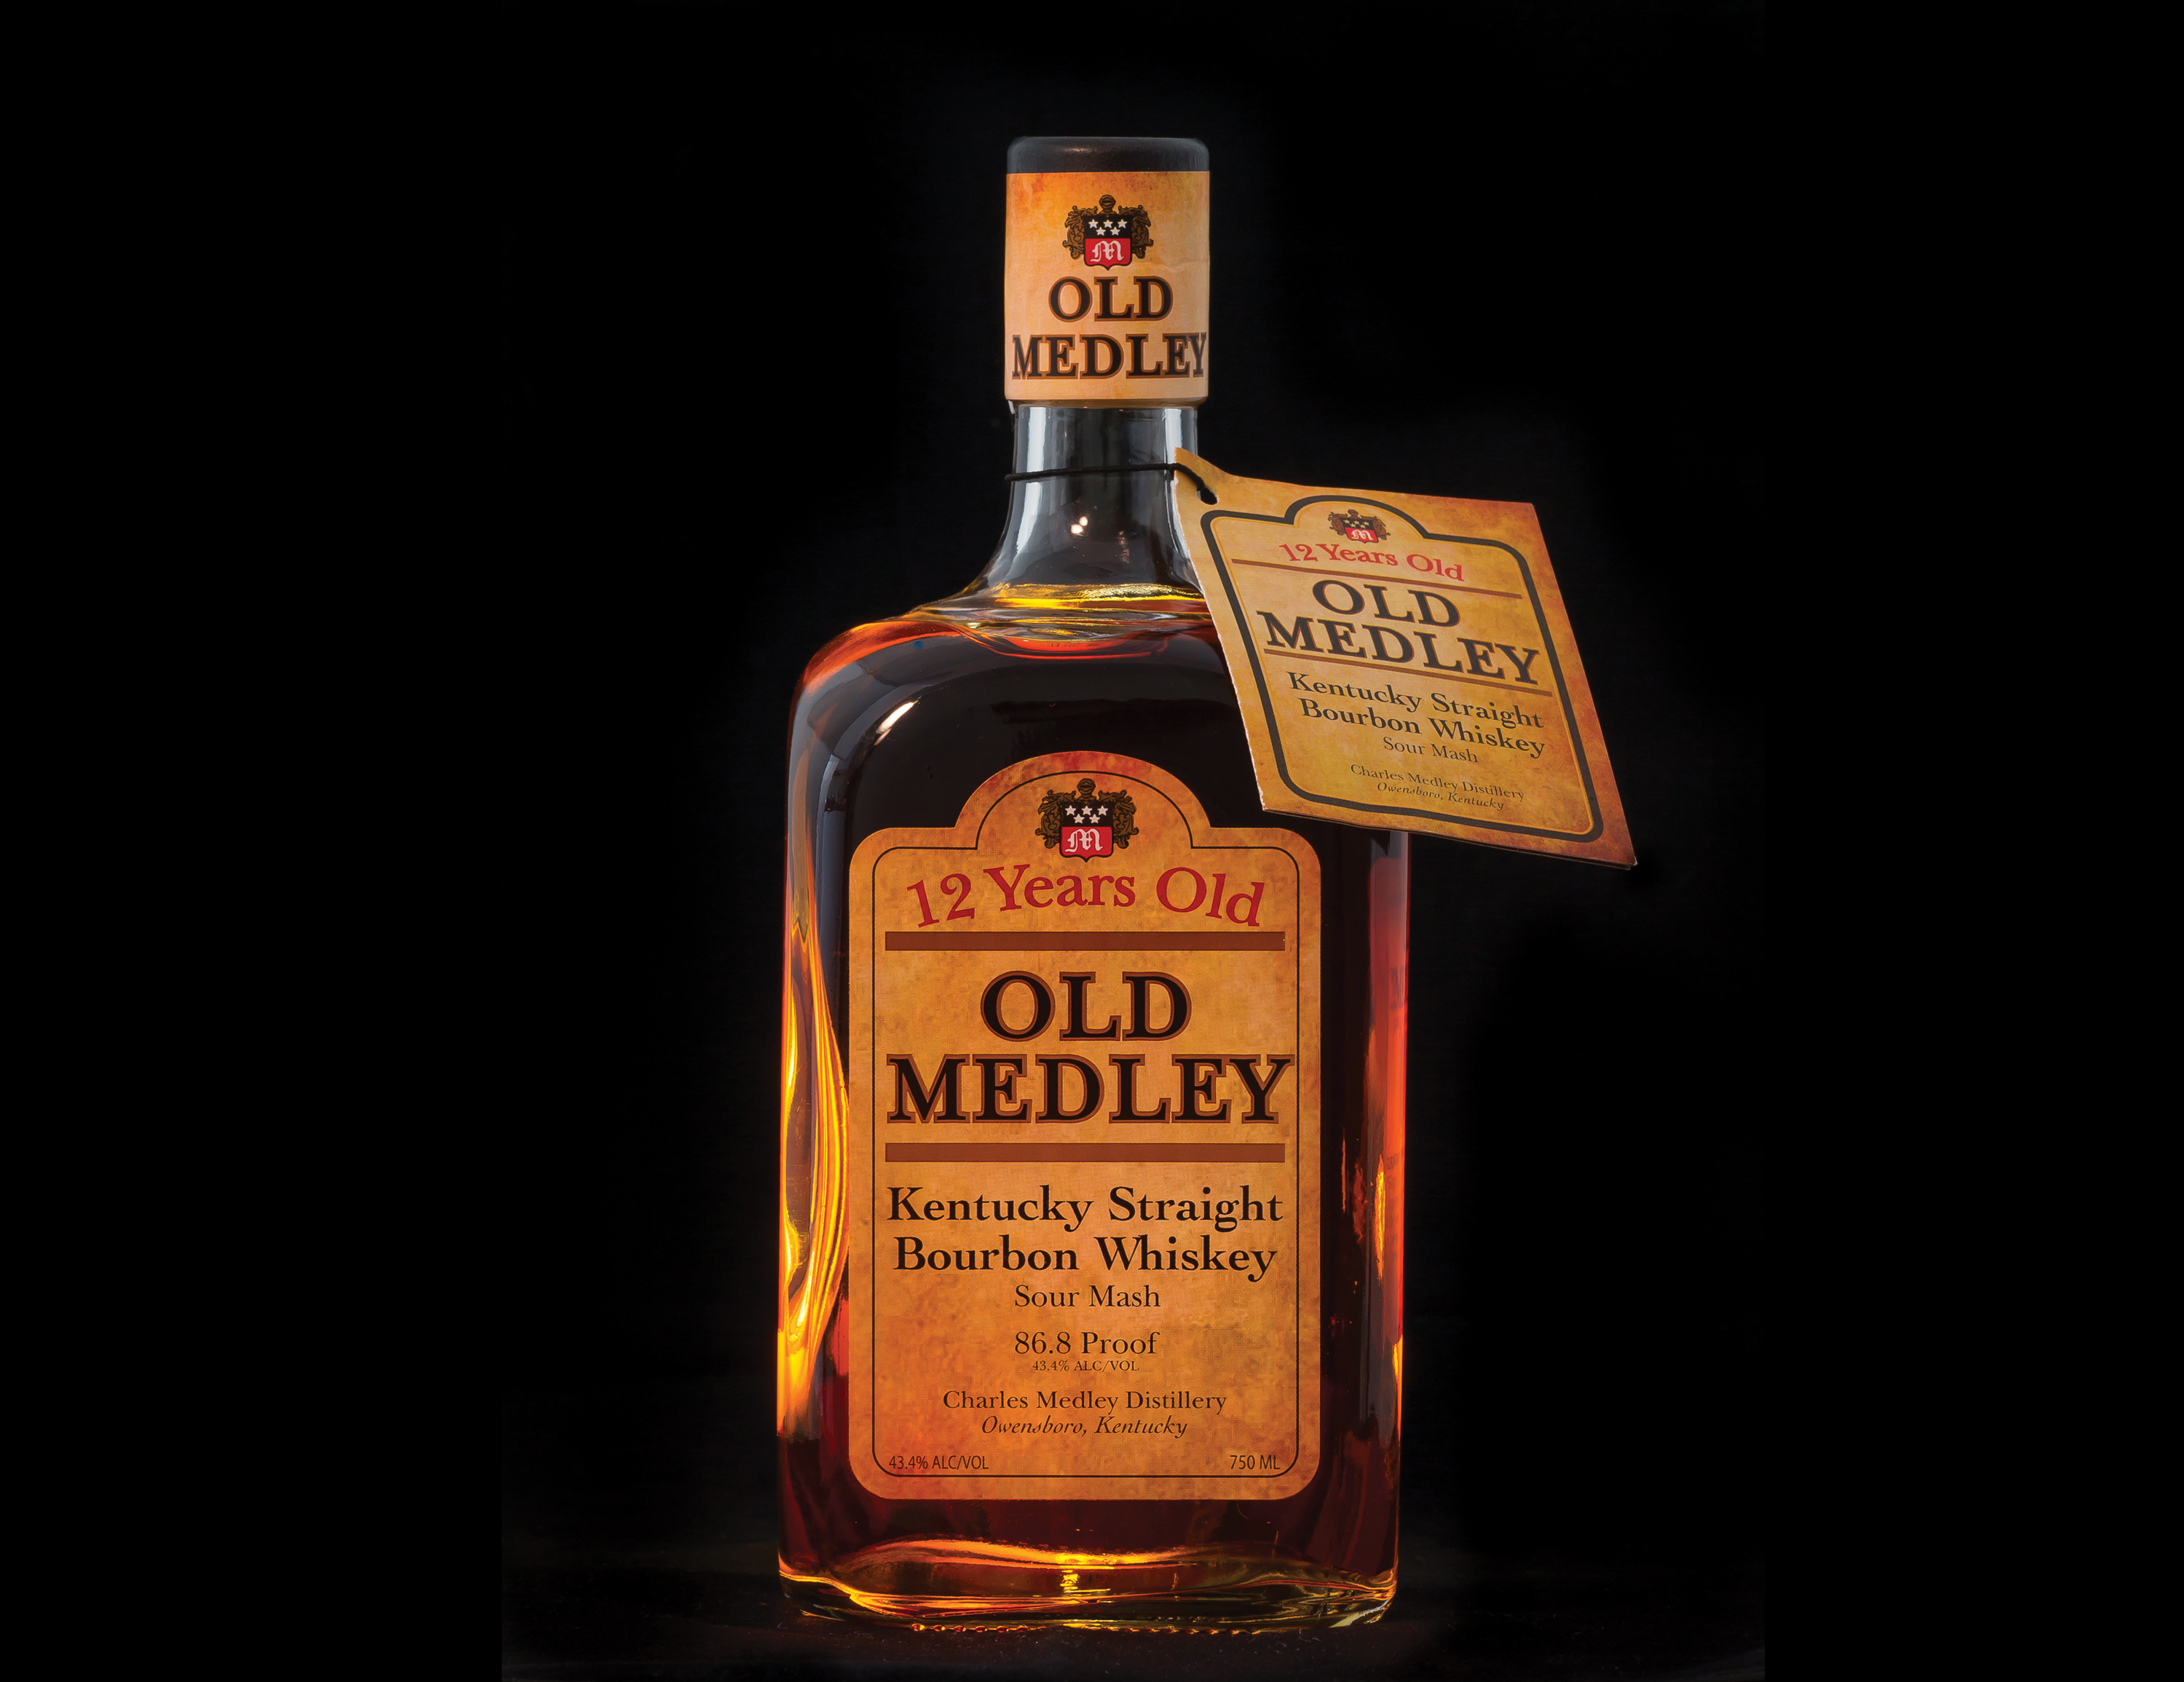 old-medley-bottle-2013.jpg